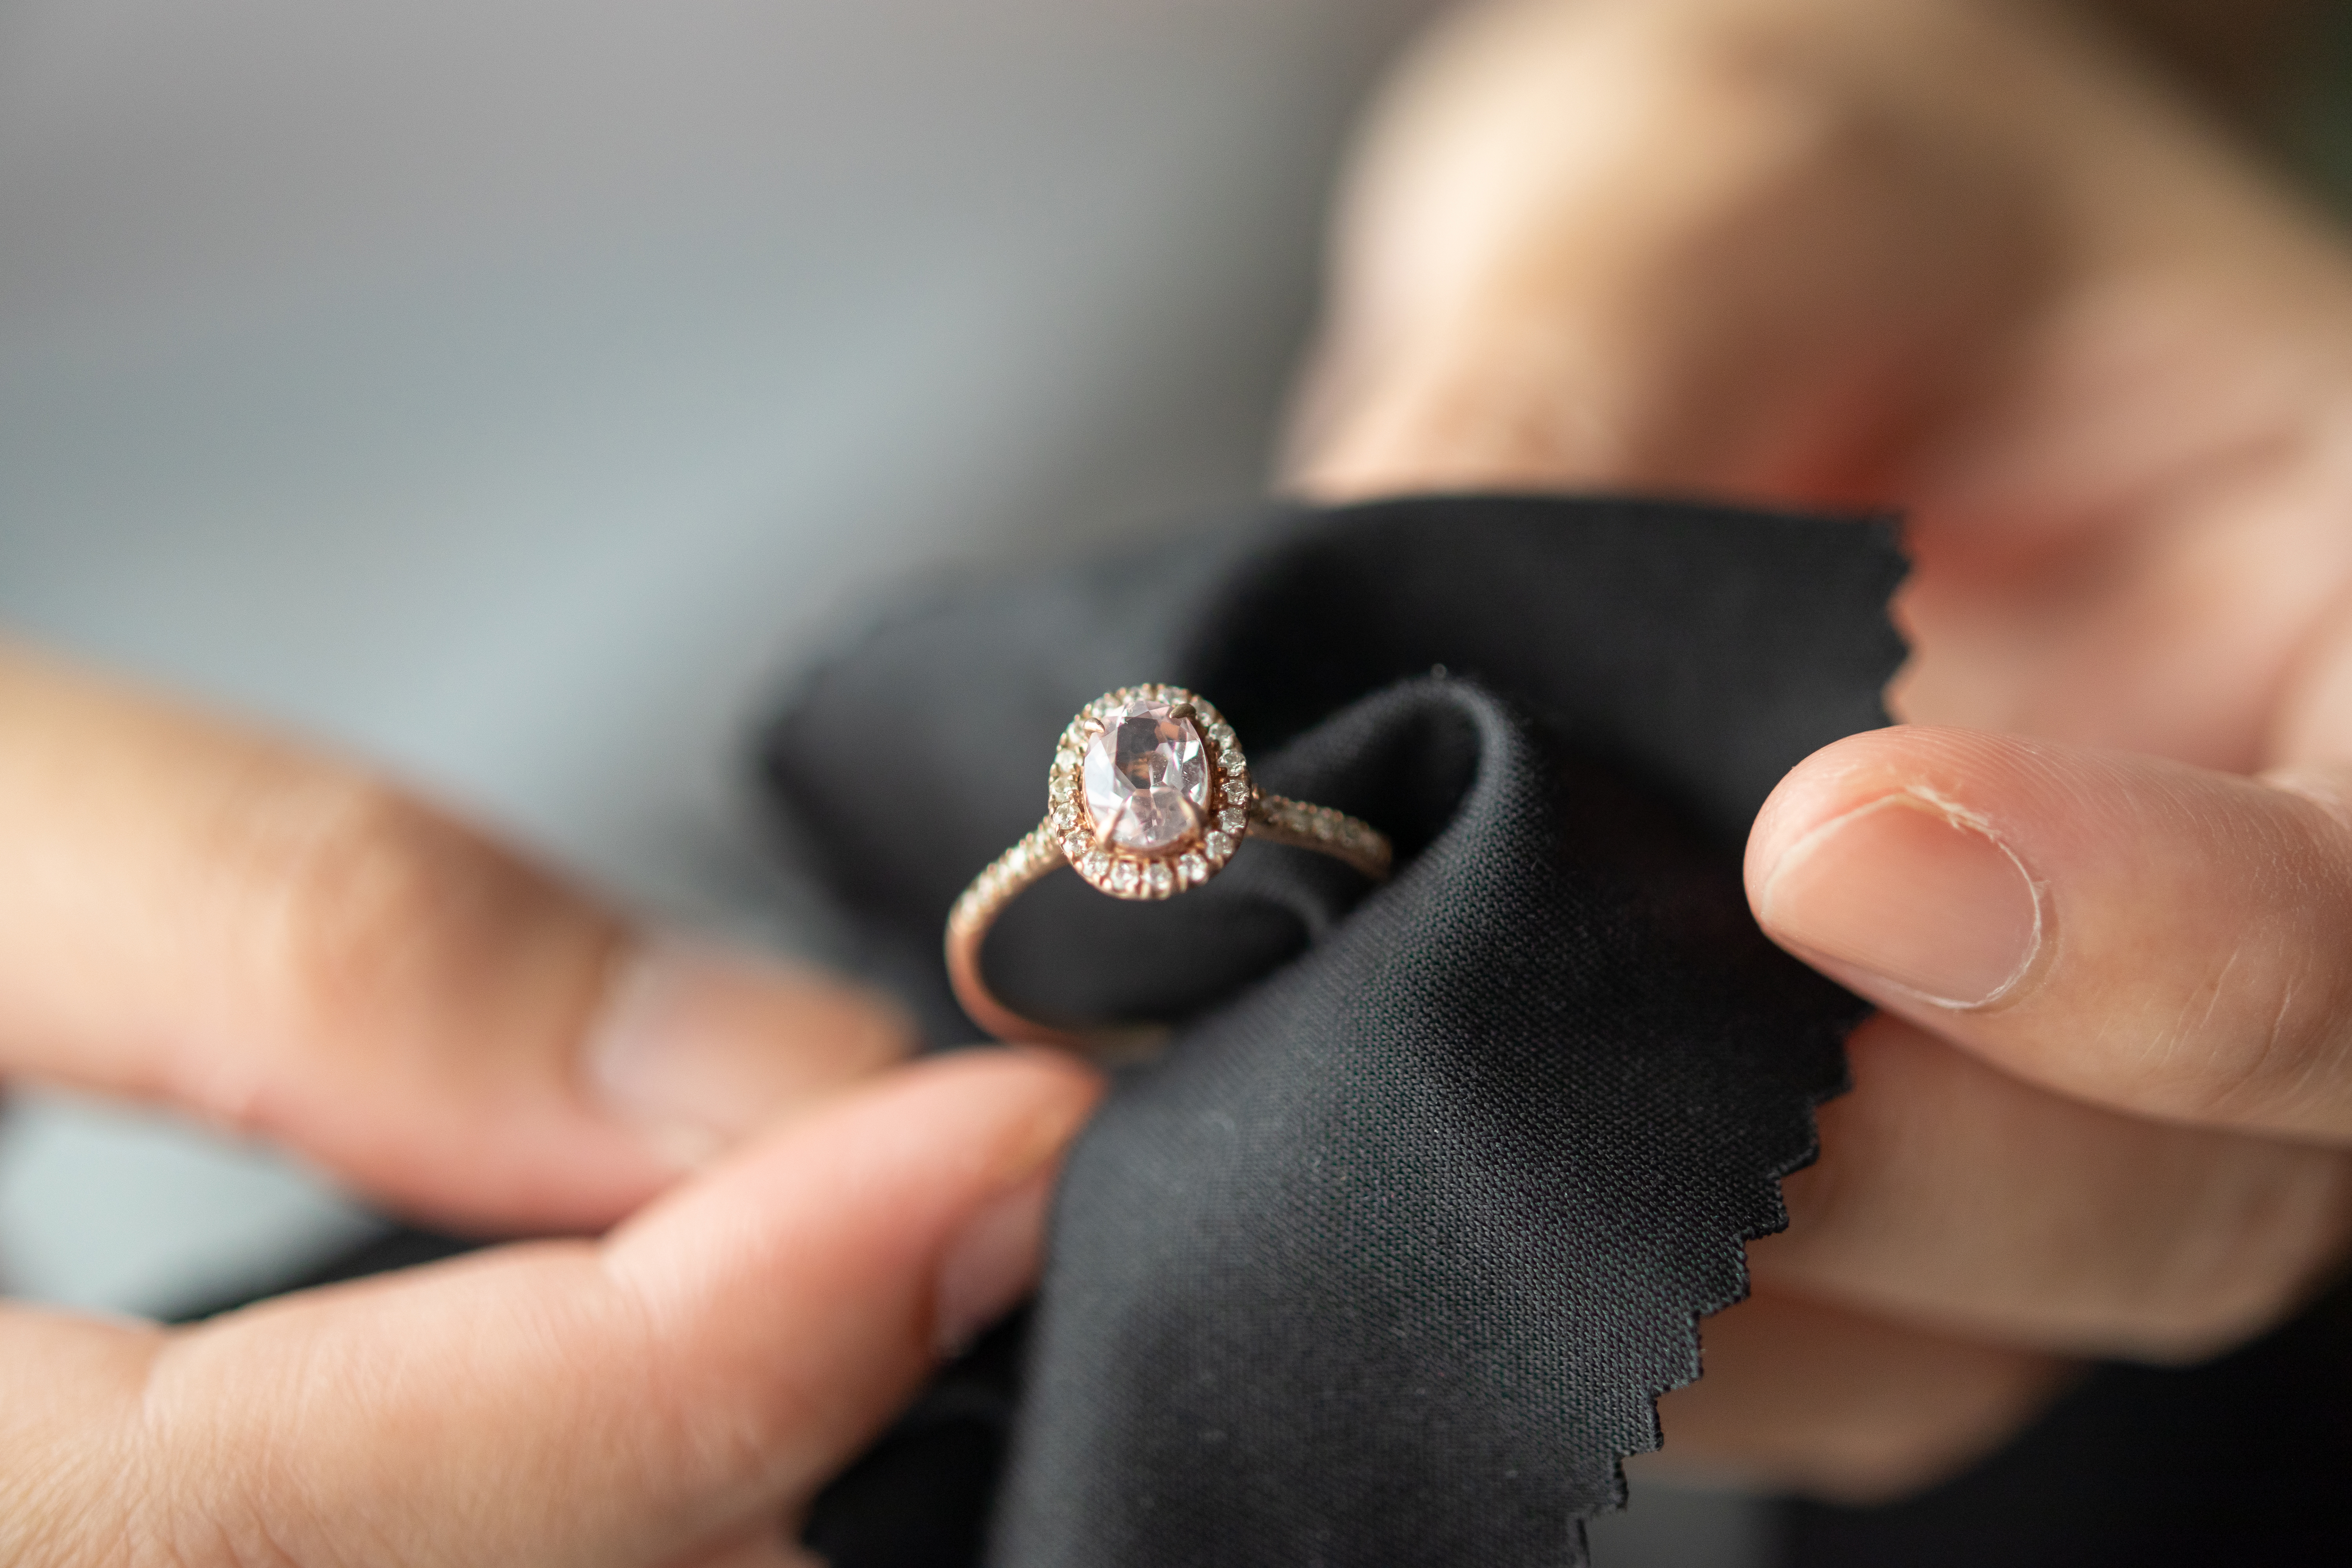 A big golden ring | Shutterstock